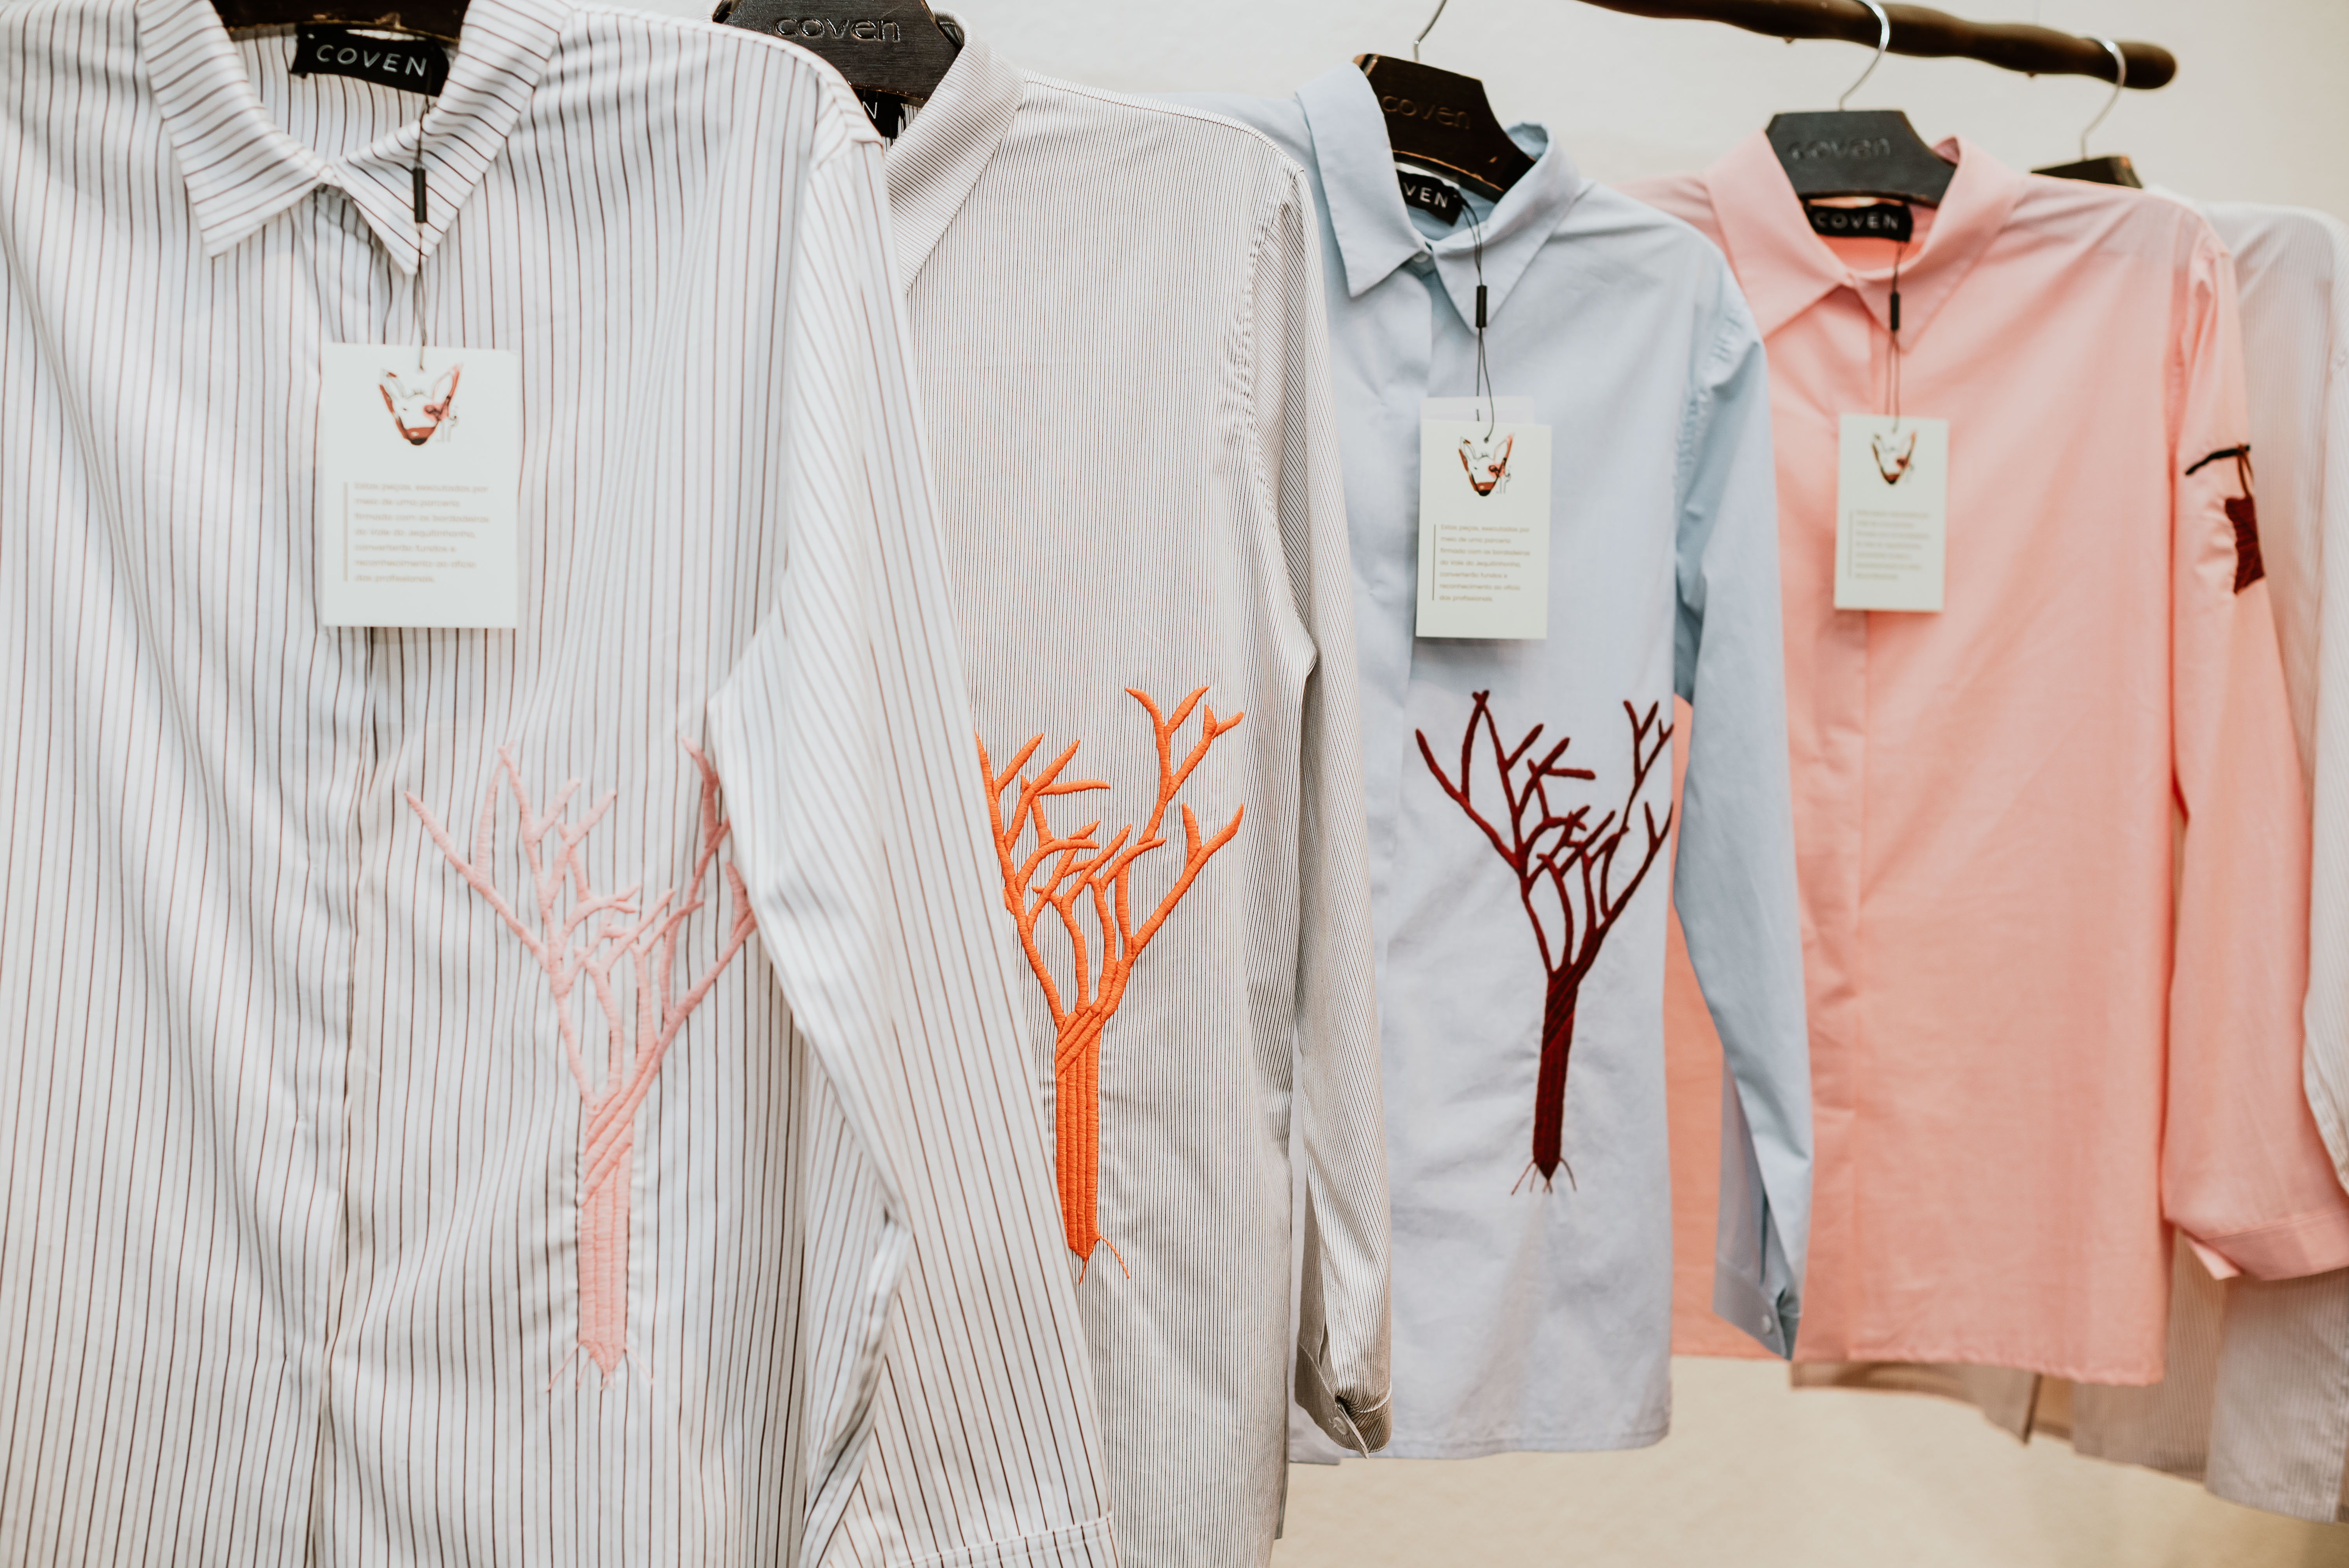 Camisas bordadas no Vale do Jequitinhonha para a marca Coven, cuja venda converte em fundos para as bordadeiras. Foto: divulgação